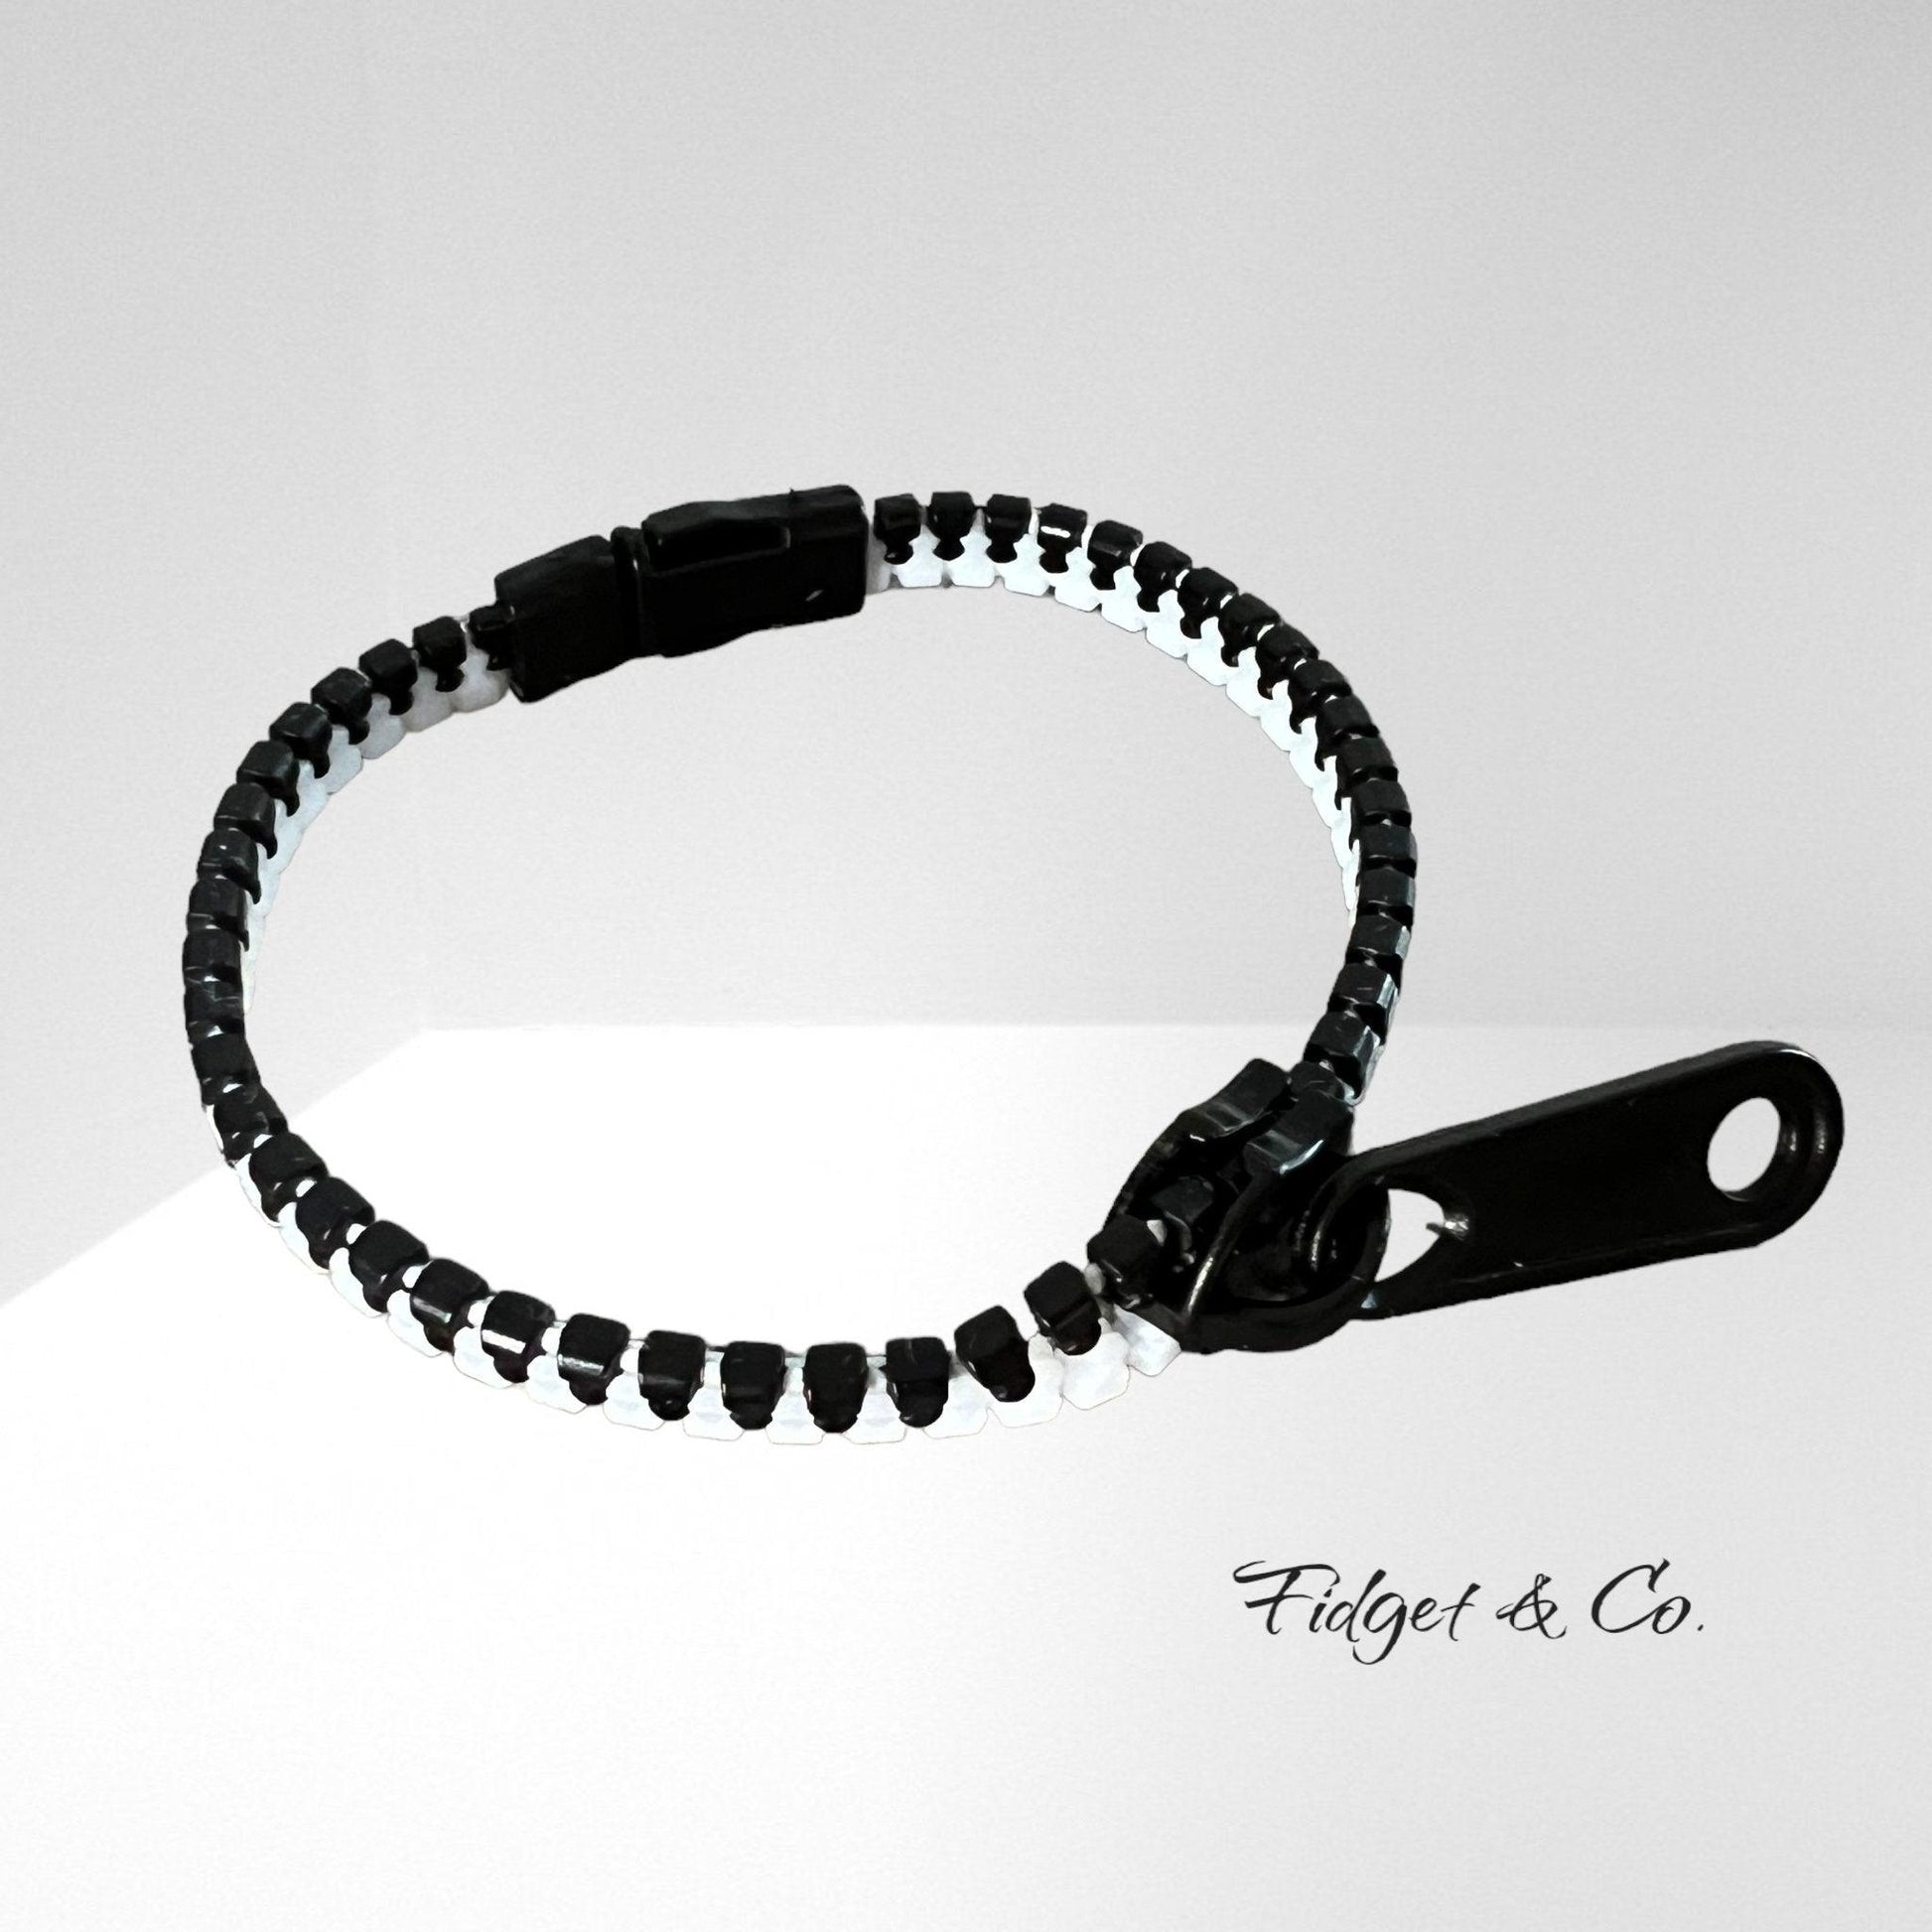 Zipper Fidget Bracelets - Fidget & Co.